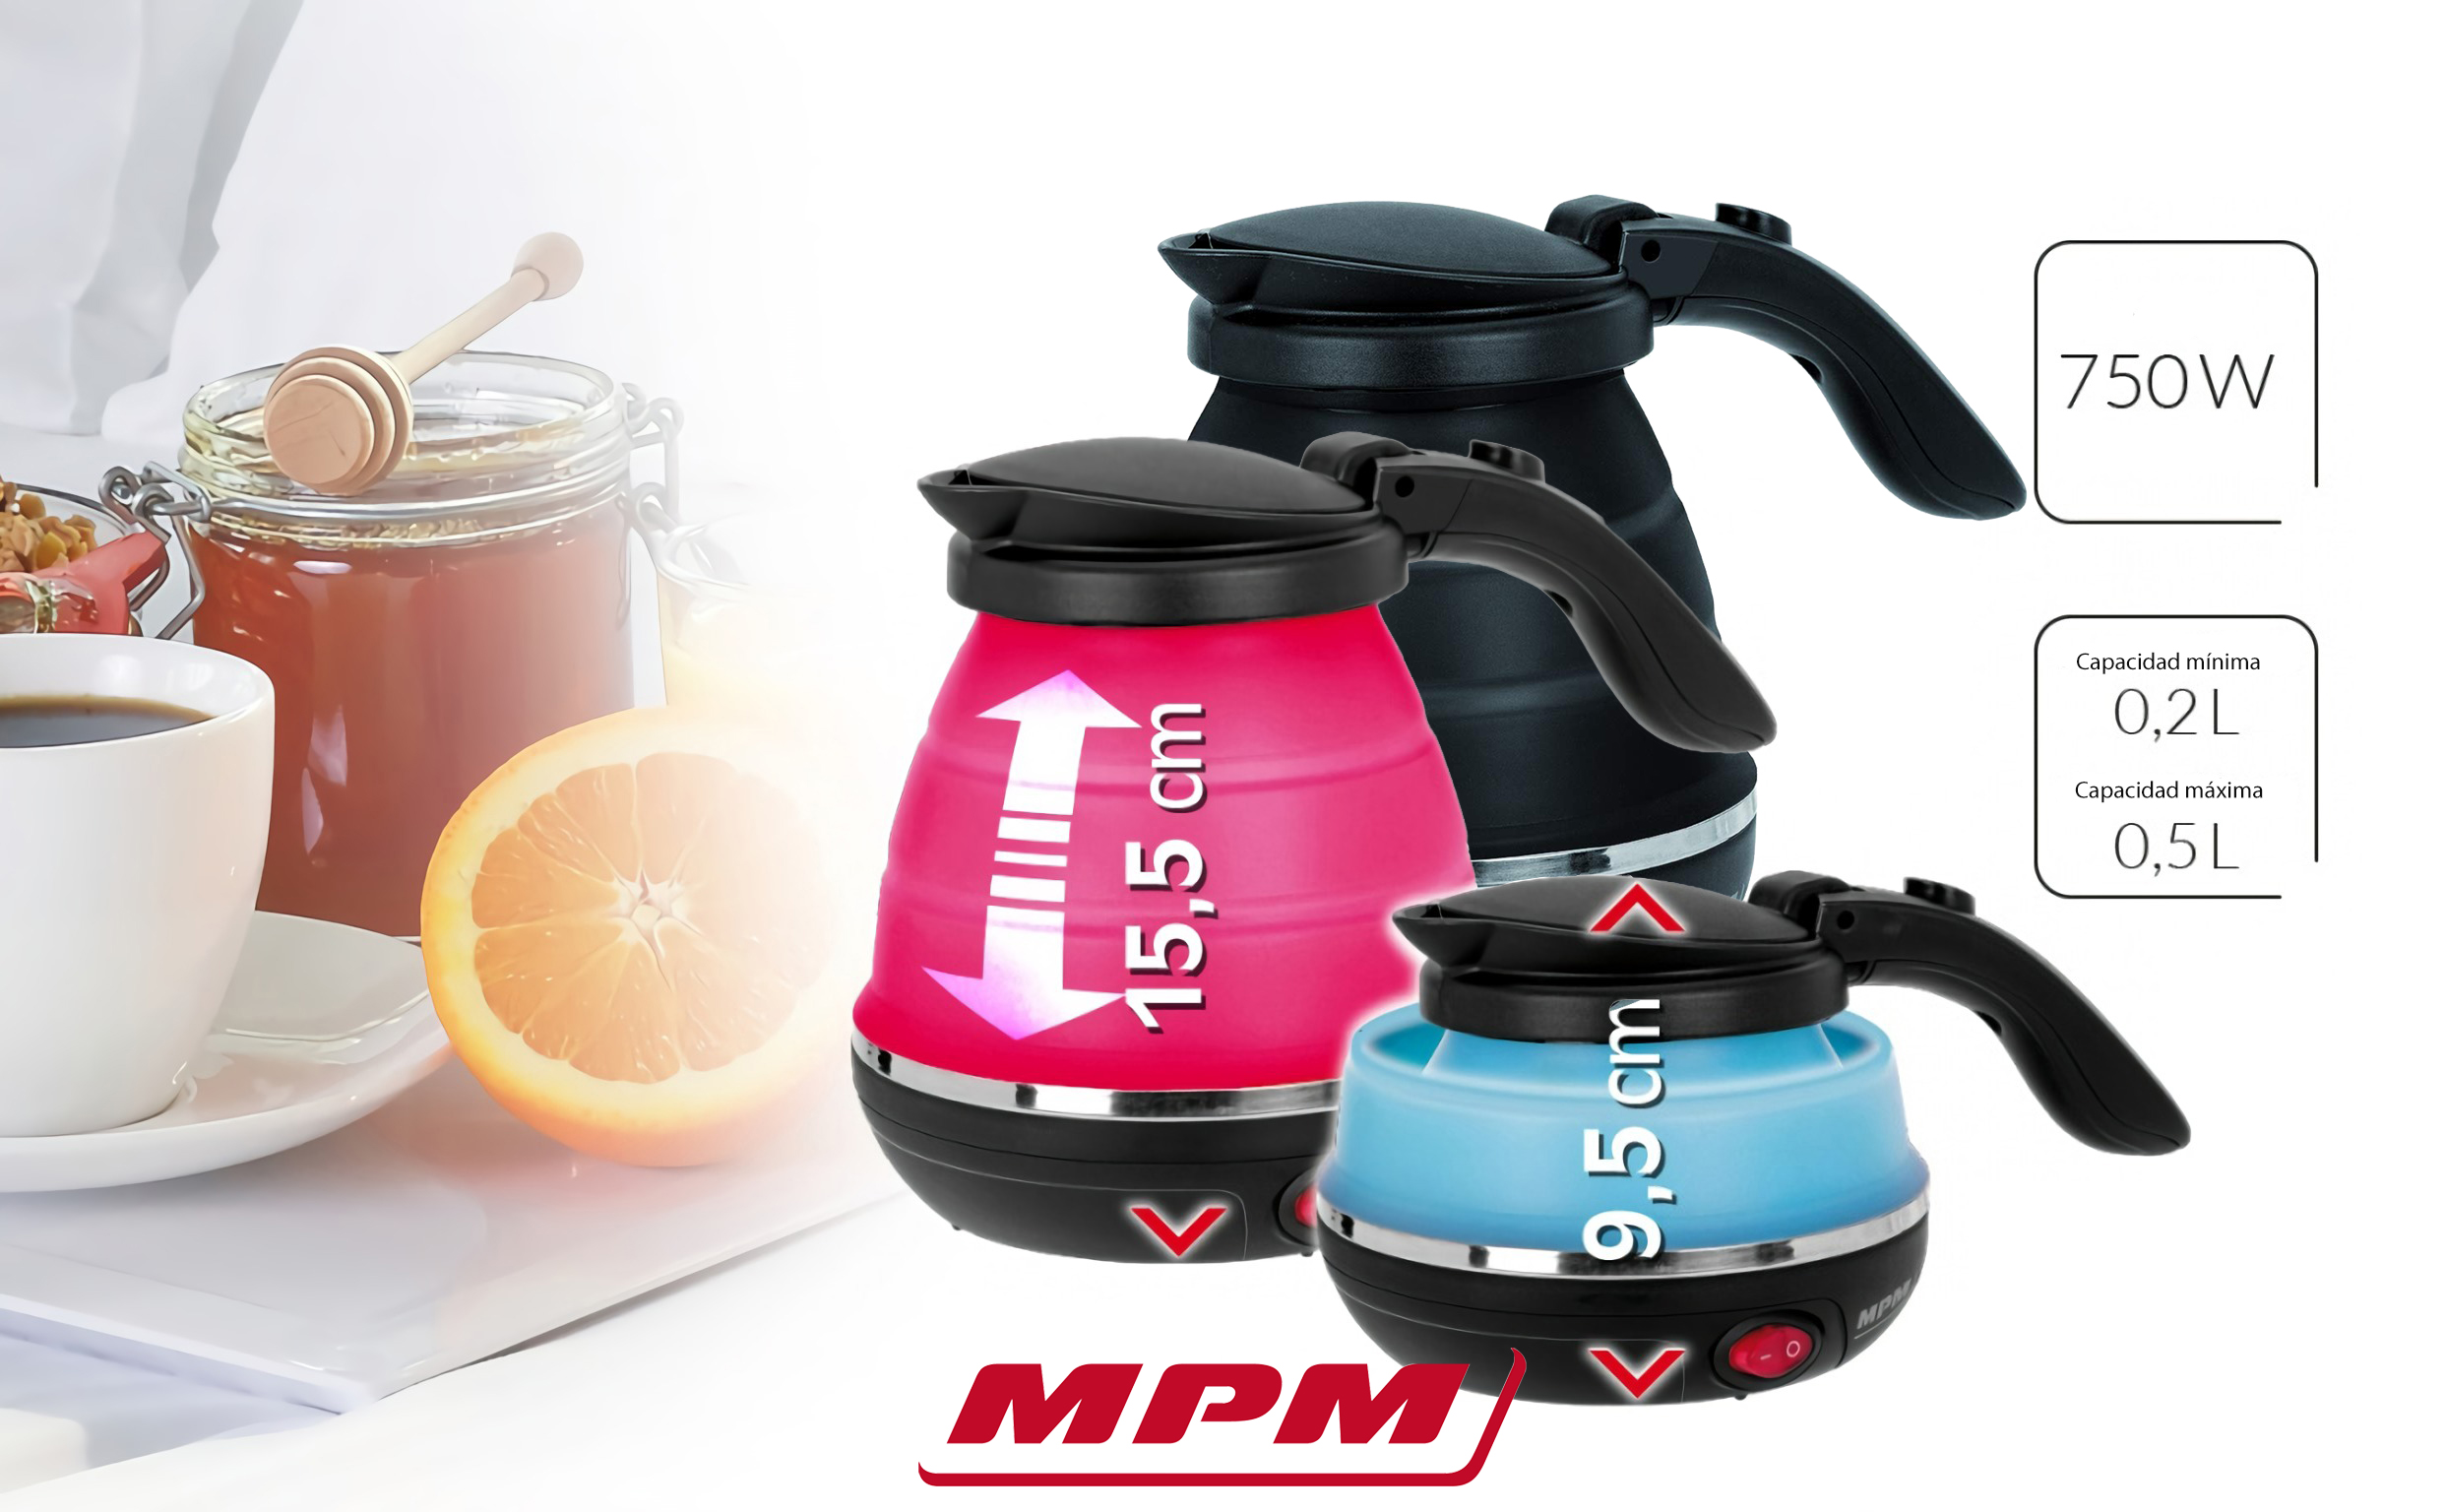 MPM MCZ-73/N Hervidor de Agua Eléctrico Plegable, Resistencia Ociulta, Tapa automática, Silicona, 0,5 Litros, 750W, Libre de BPA, Azul